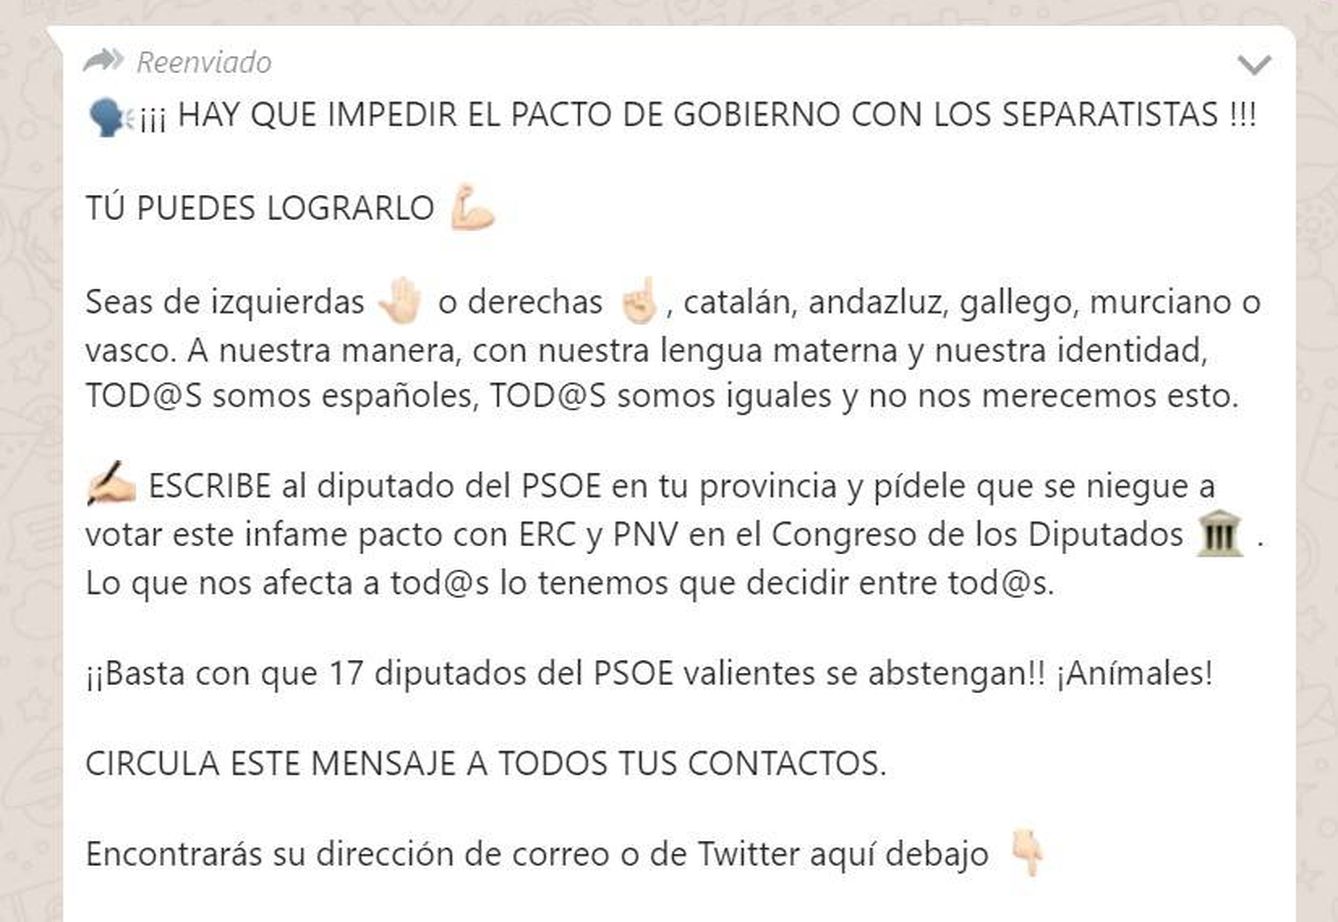 Campaña de WhatsApp para presionar a los diputados del PSOE (EC)